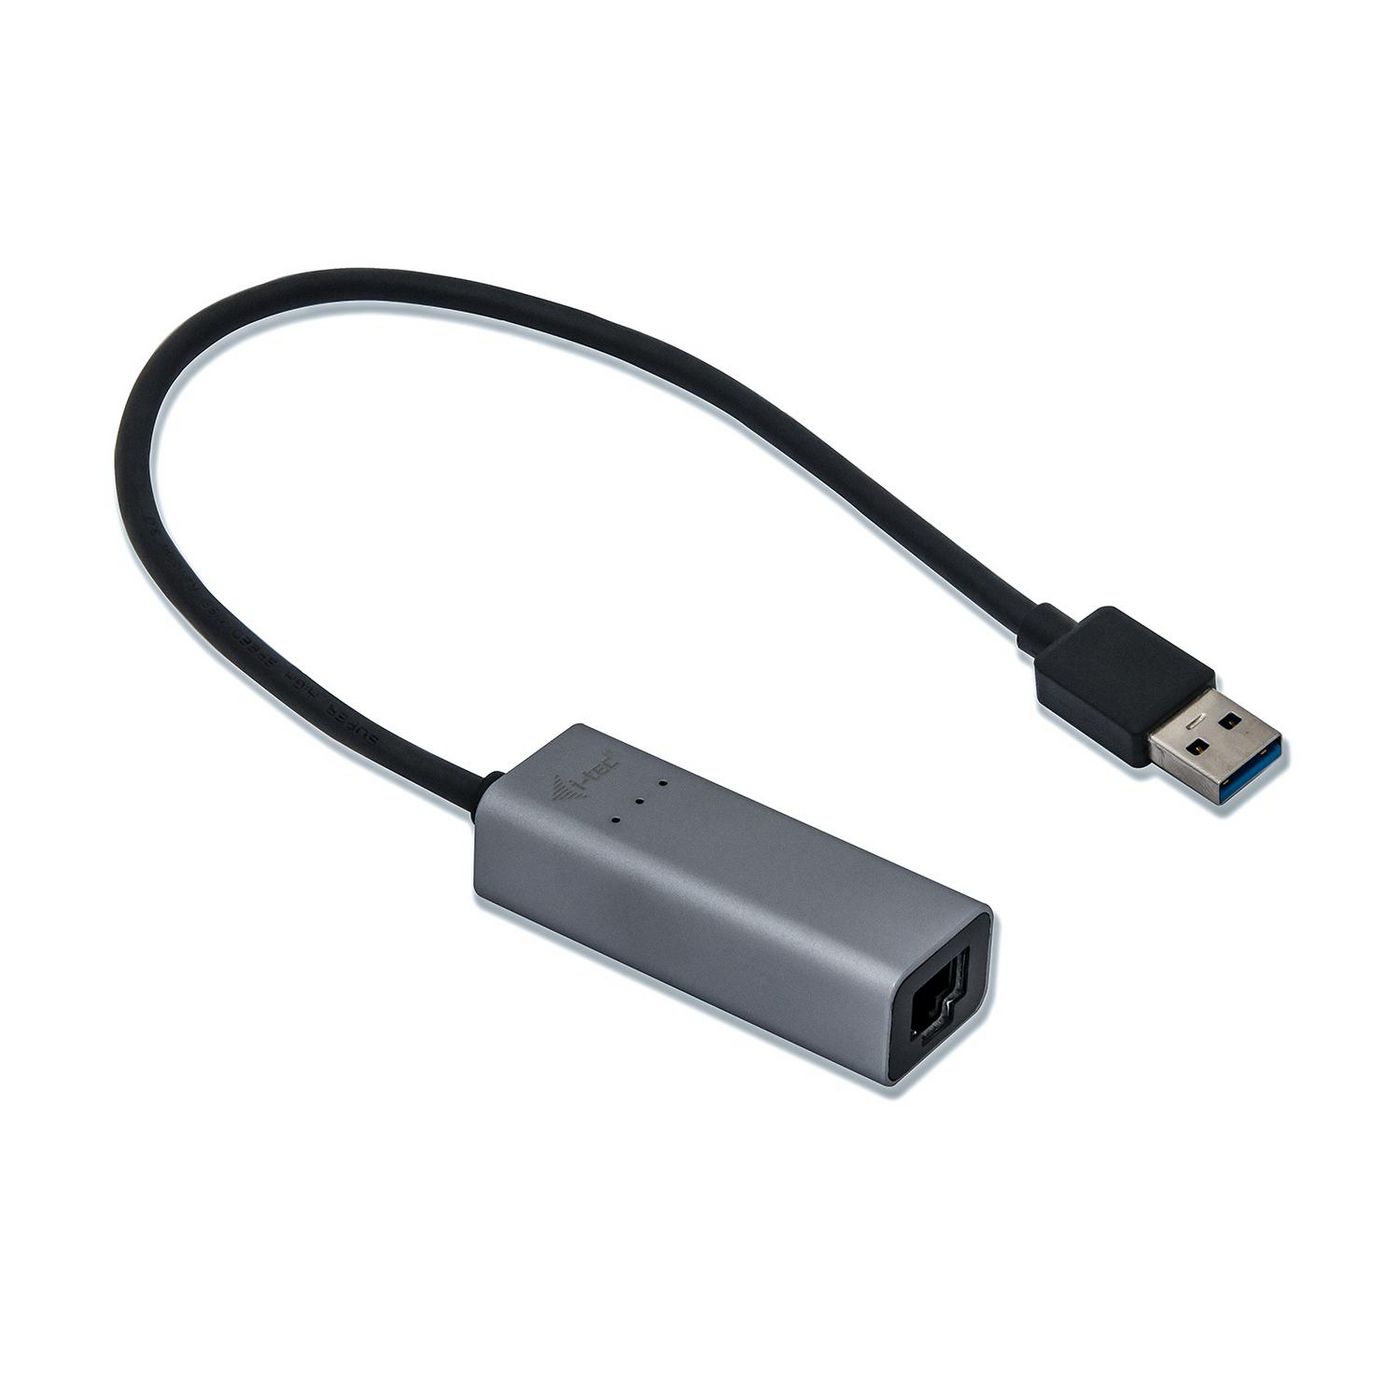 I-tec I-TEC USB 3.0 METAL GLAN ADAP. Metal USB 3.0 Metal Gigabit  U3METALGLAN - eet01